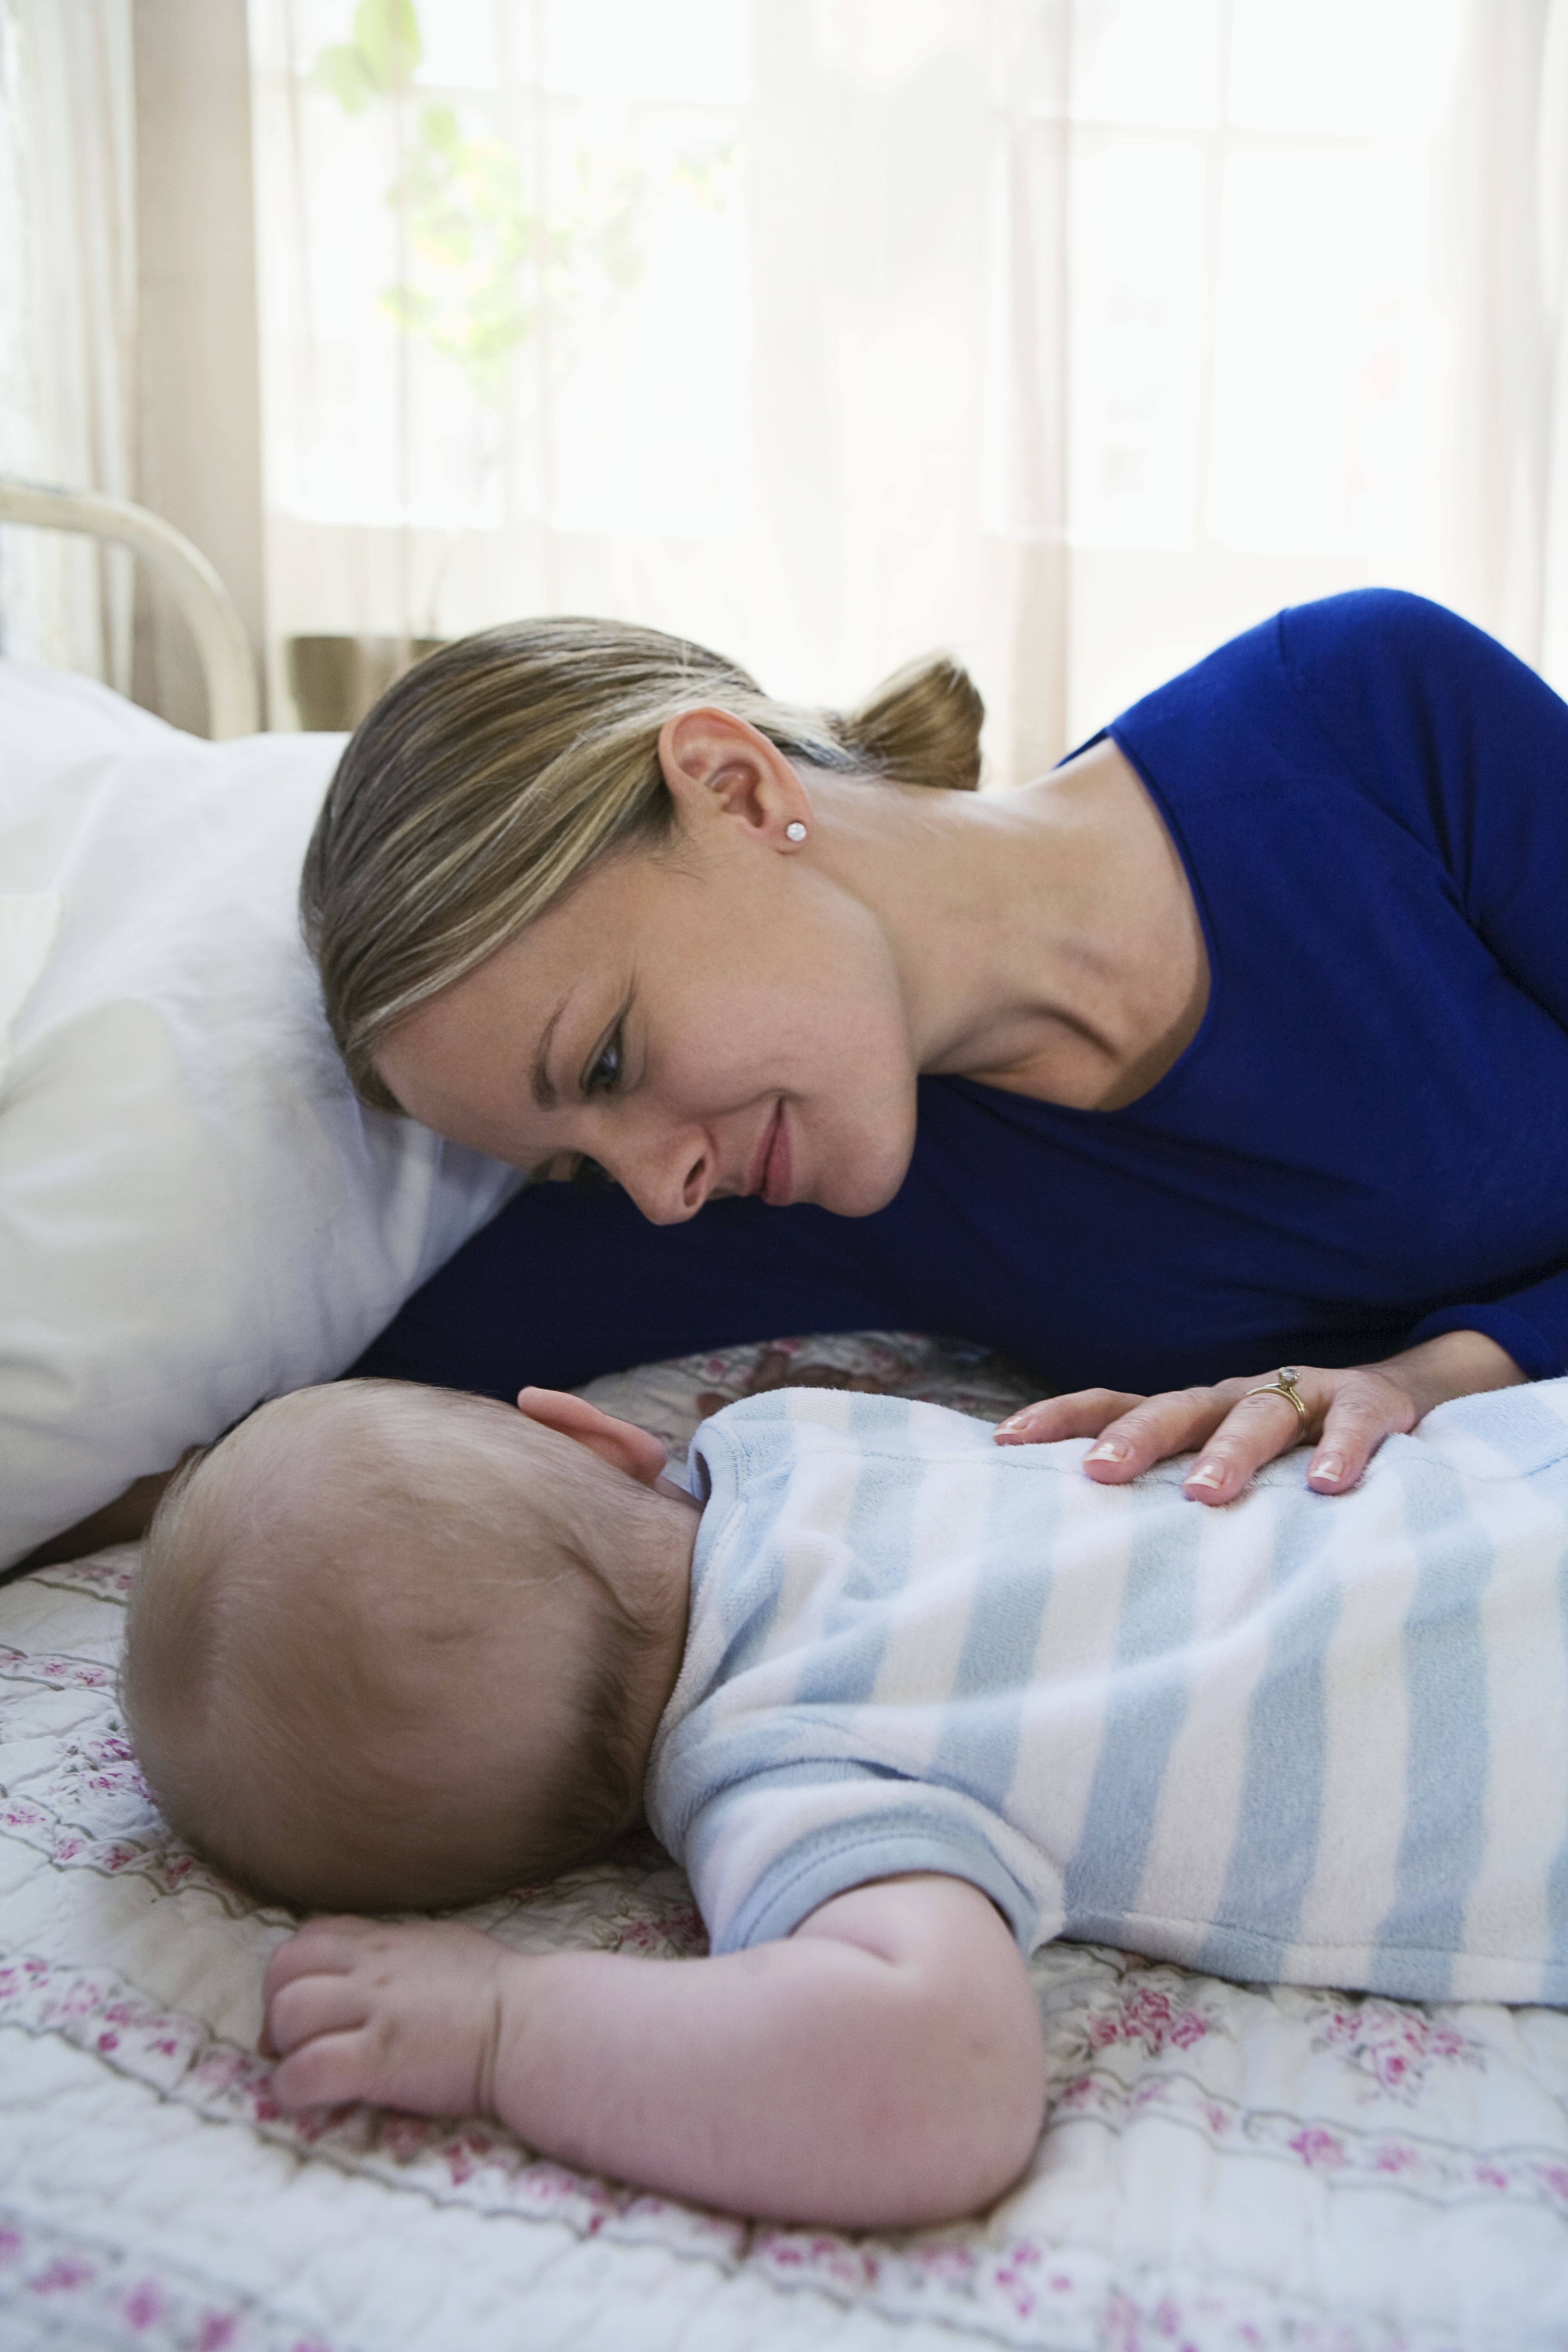 Eine Mutter wacht über ihr schlafendes Baby | Quelle: Getty Images